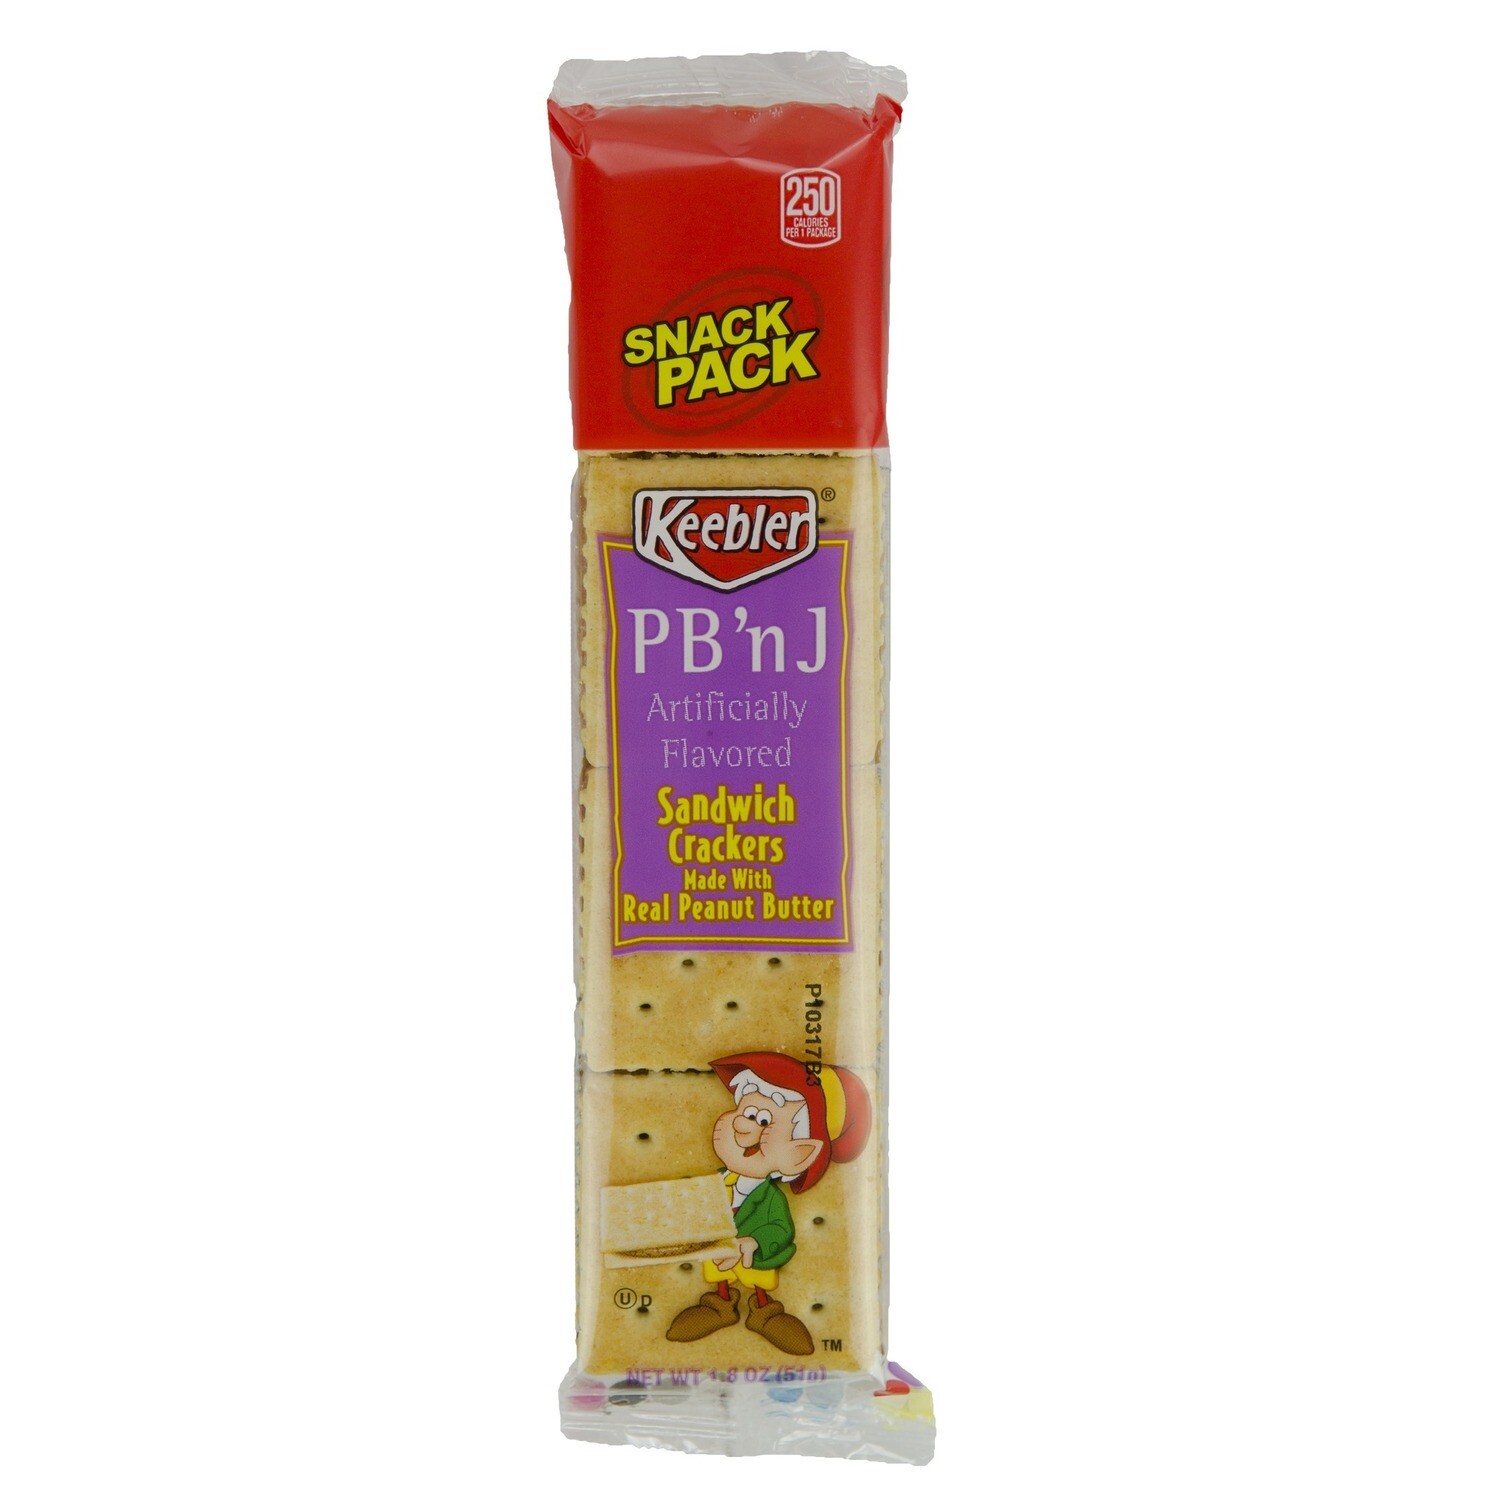 Snack / Crackers / Keebler PB n J Crackers